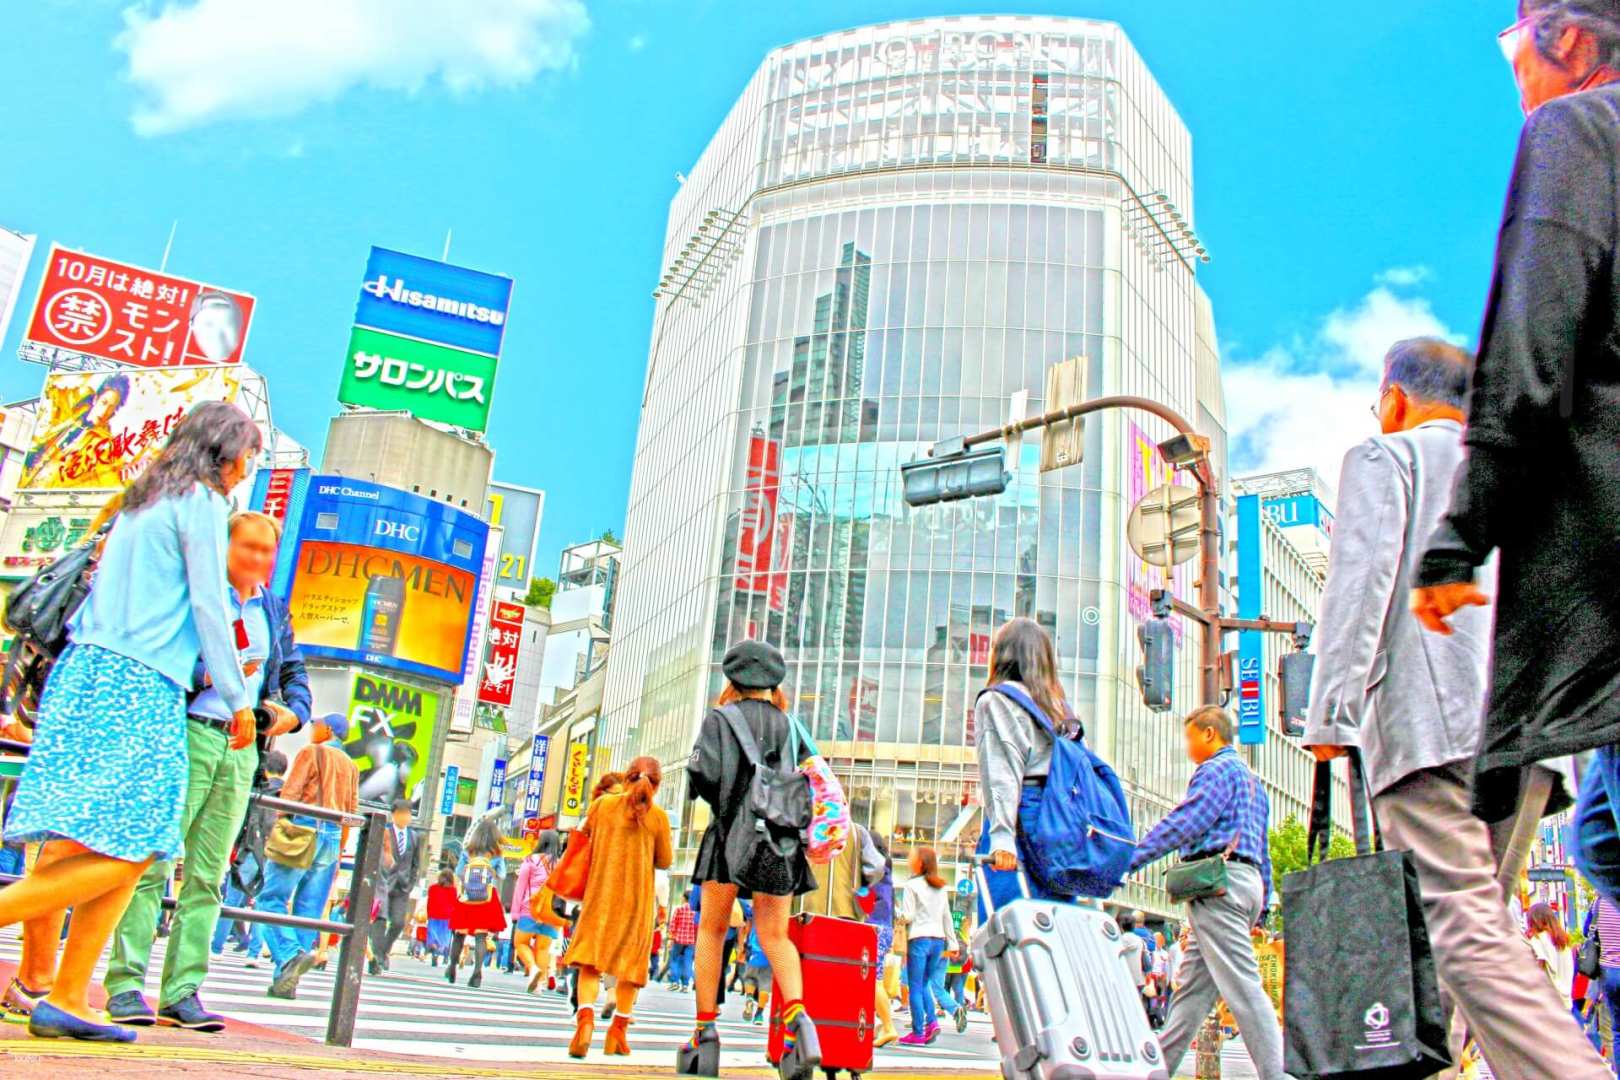 日本-東京步行私人導覽一日遊| 築地&淺草&明治神宮